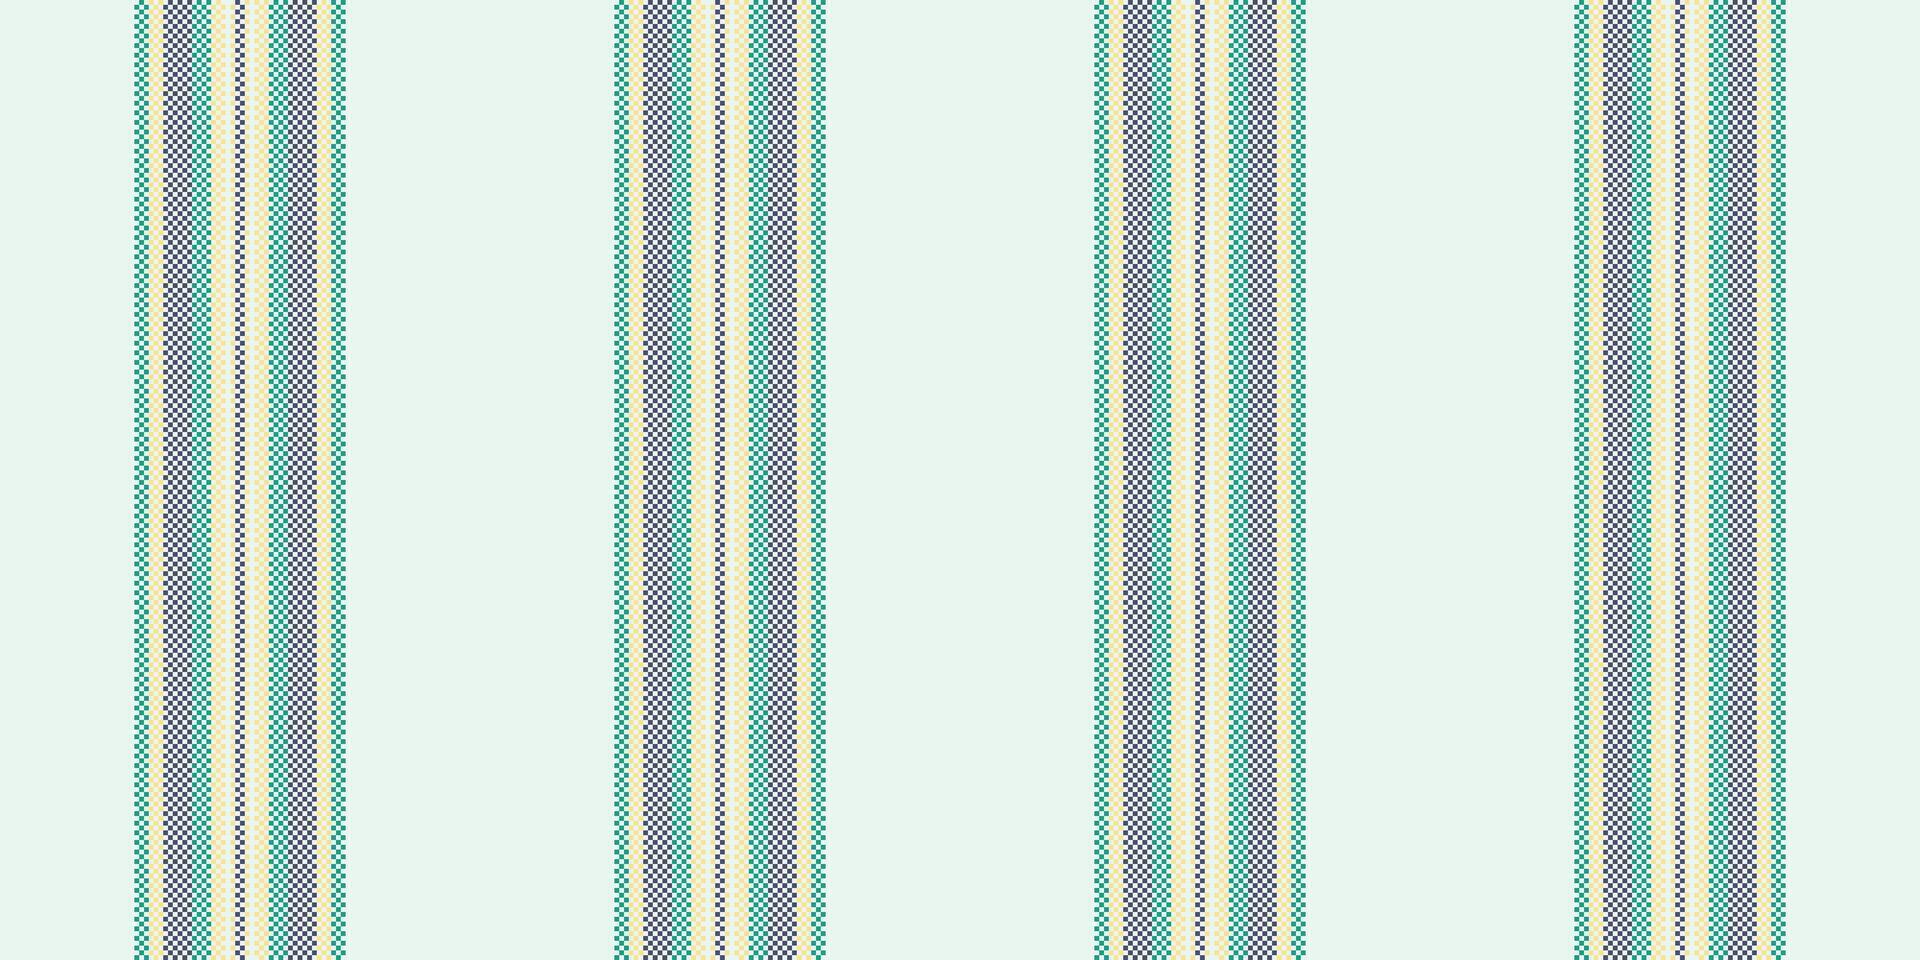 algodón textura líneas tela, margarita raya textil sin costura. delicado antecedentes modelo vector vertical en blanco y verde azulado colores.